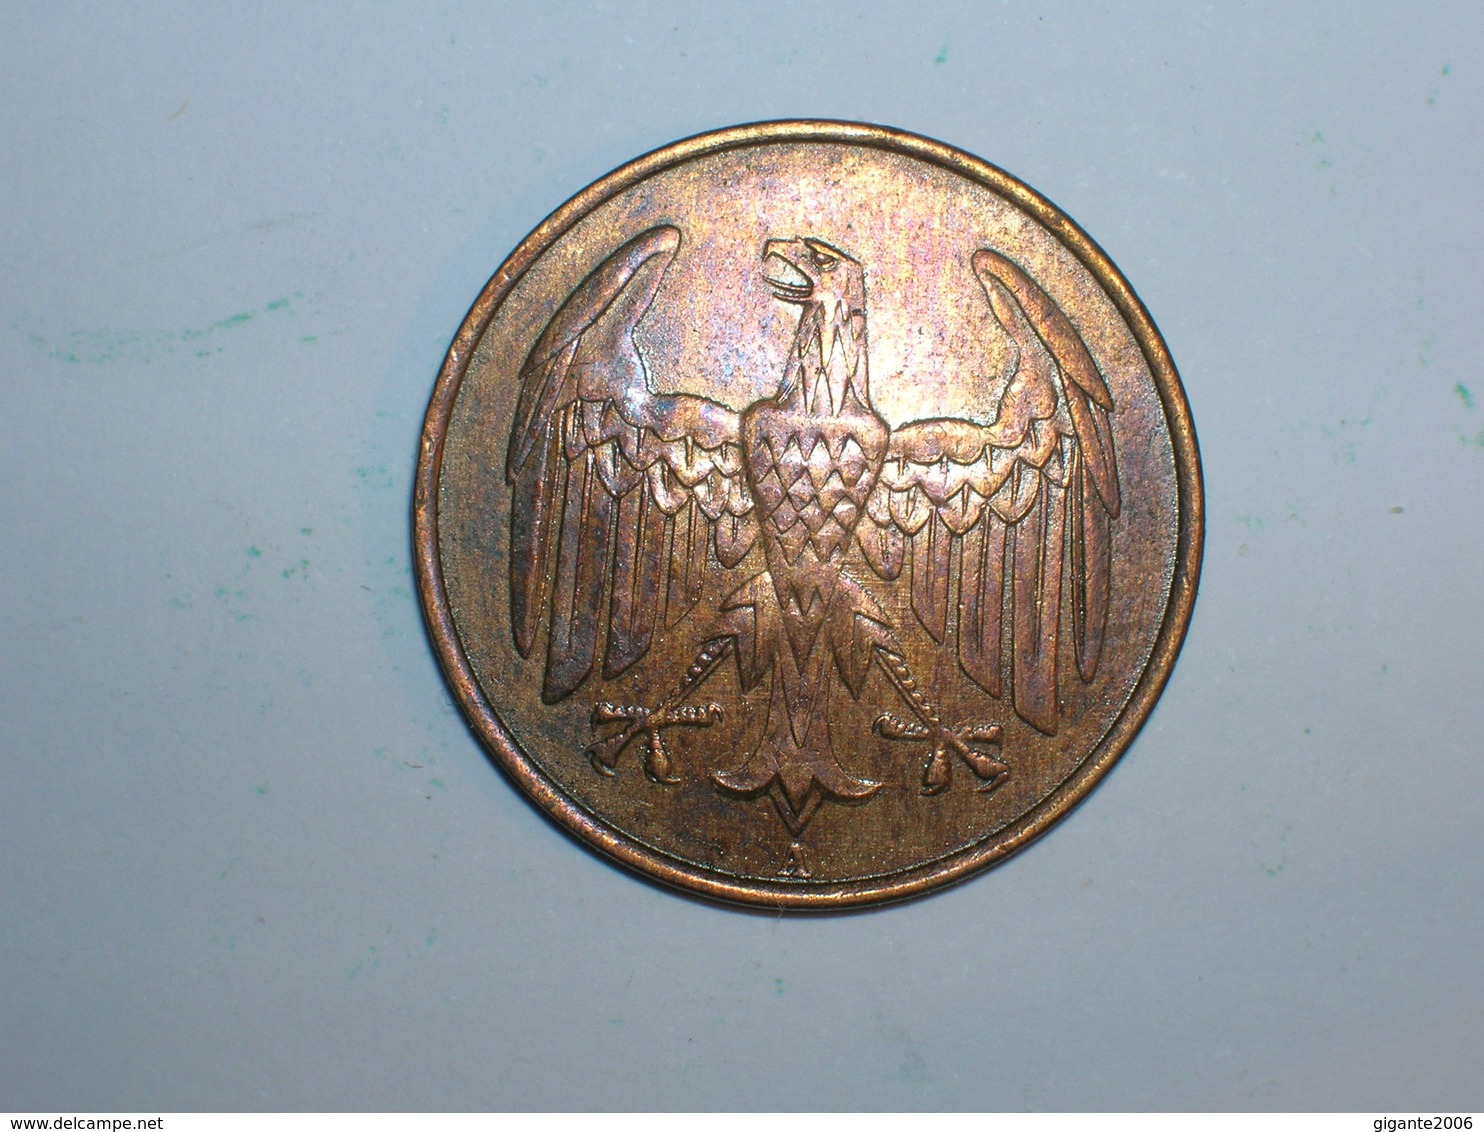 ALEMANIA 4 PFENNIG 1932 A (1268) - 4 Reichspfennig